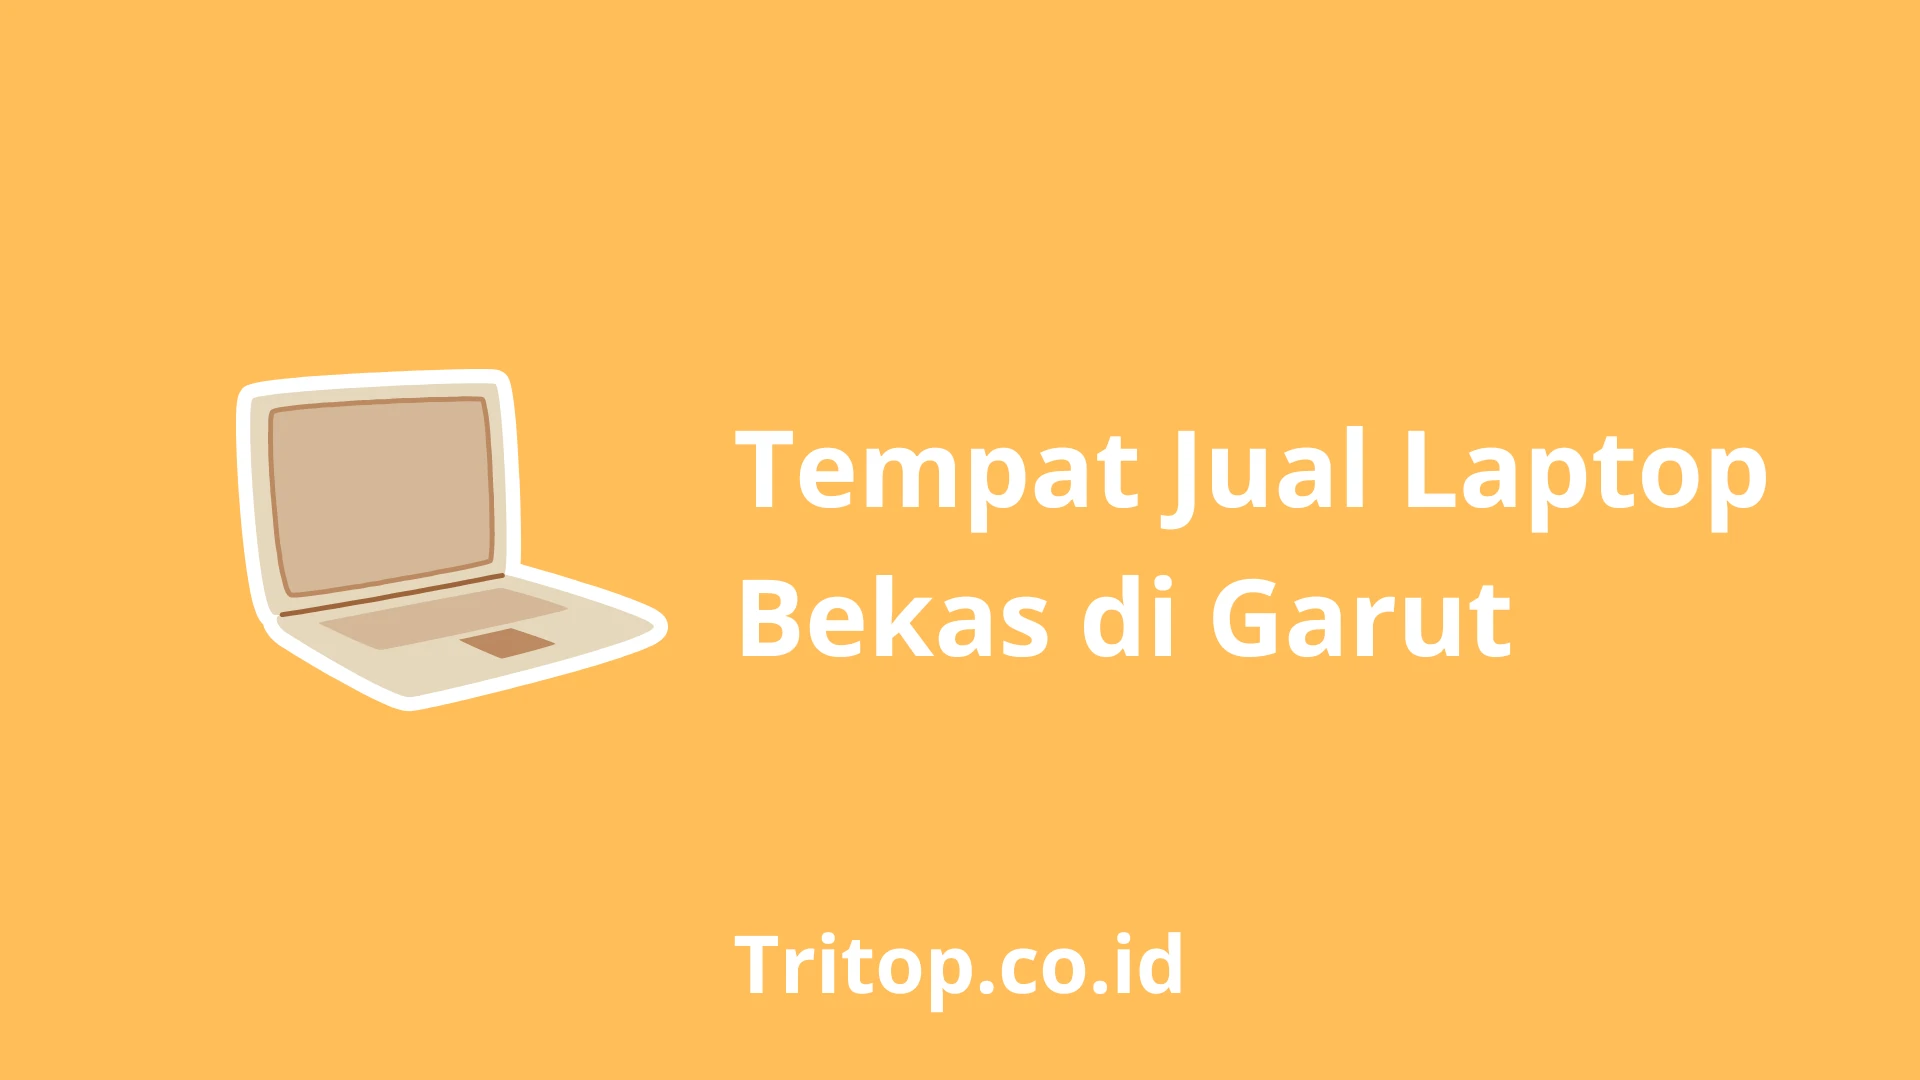 Tempat Jual Laptop Bekas di Garut tritop.co.id